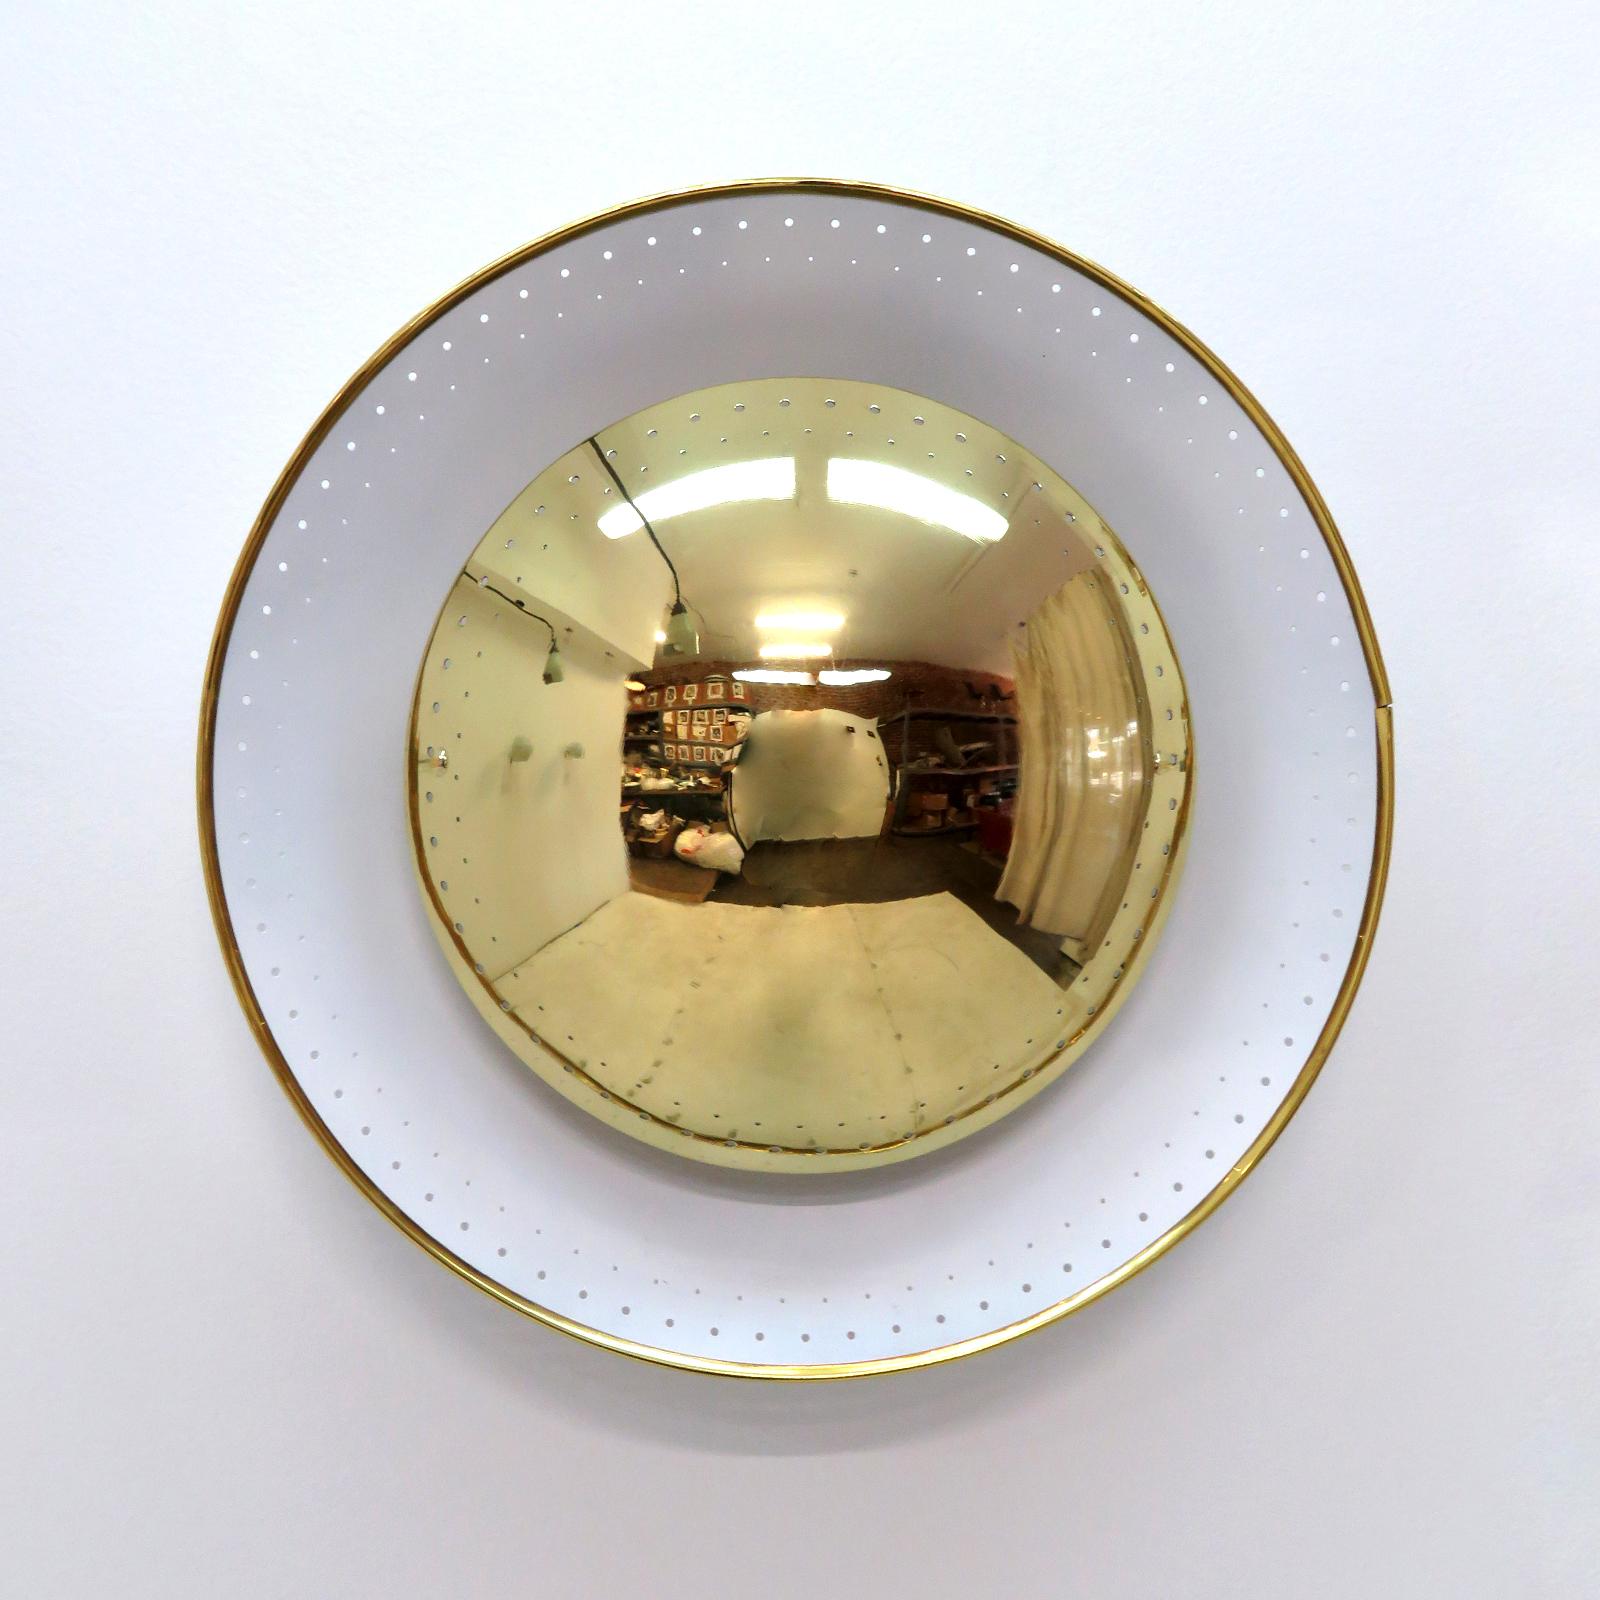 Elégante applique ou plafonnier 'Oculus' conçue par Gallery L7, fabriquée et finie à la main à Los Angeles en laiton américain, avec un abat-jour perforé en laiton poli sur un disque perforé émaillé blanc avec un bord coloré en laiton, trois